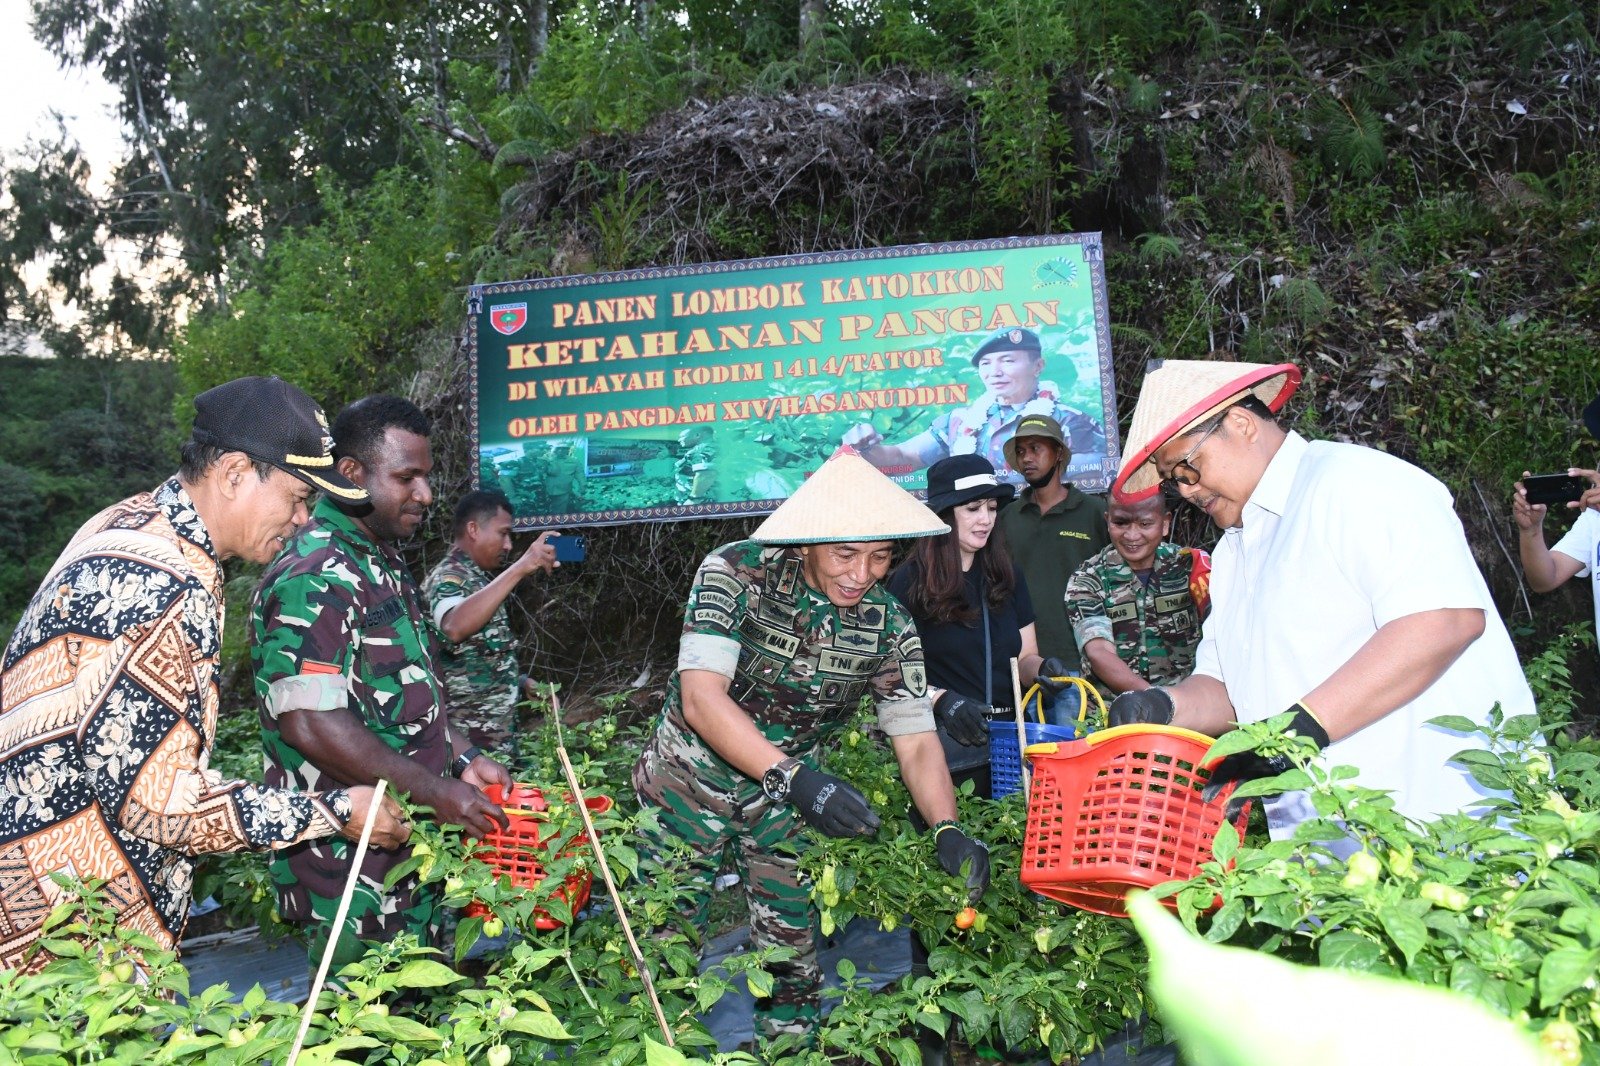 Hasil Ketahanan Pangan, Pangdam XIV/Hsn Panen Lombok Katokon di Toraja Utara